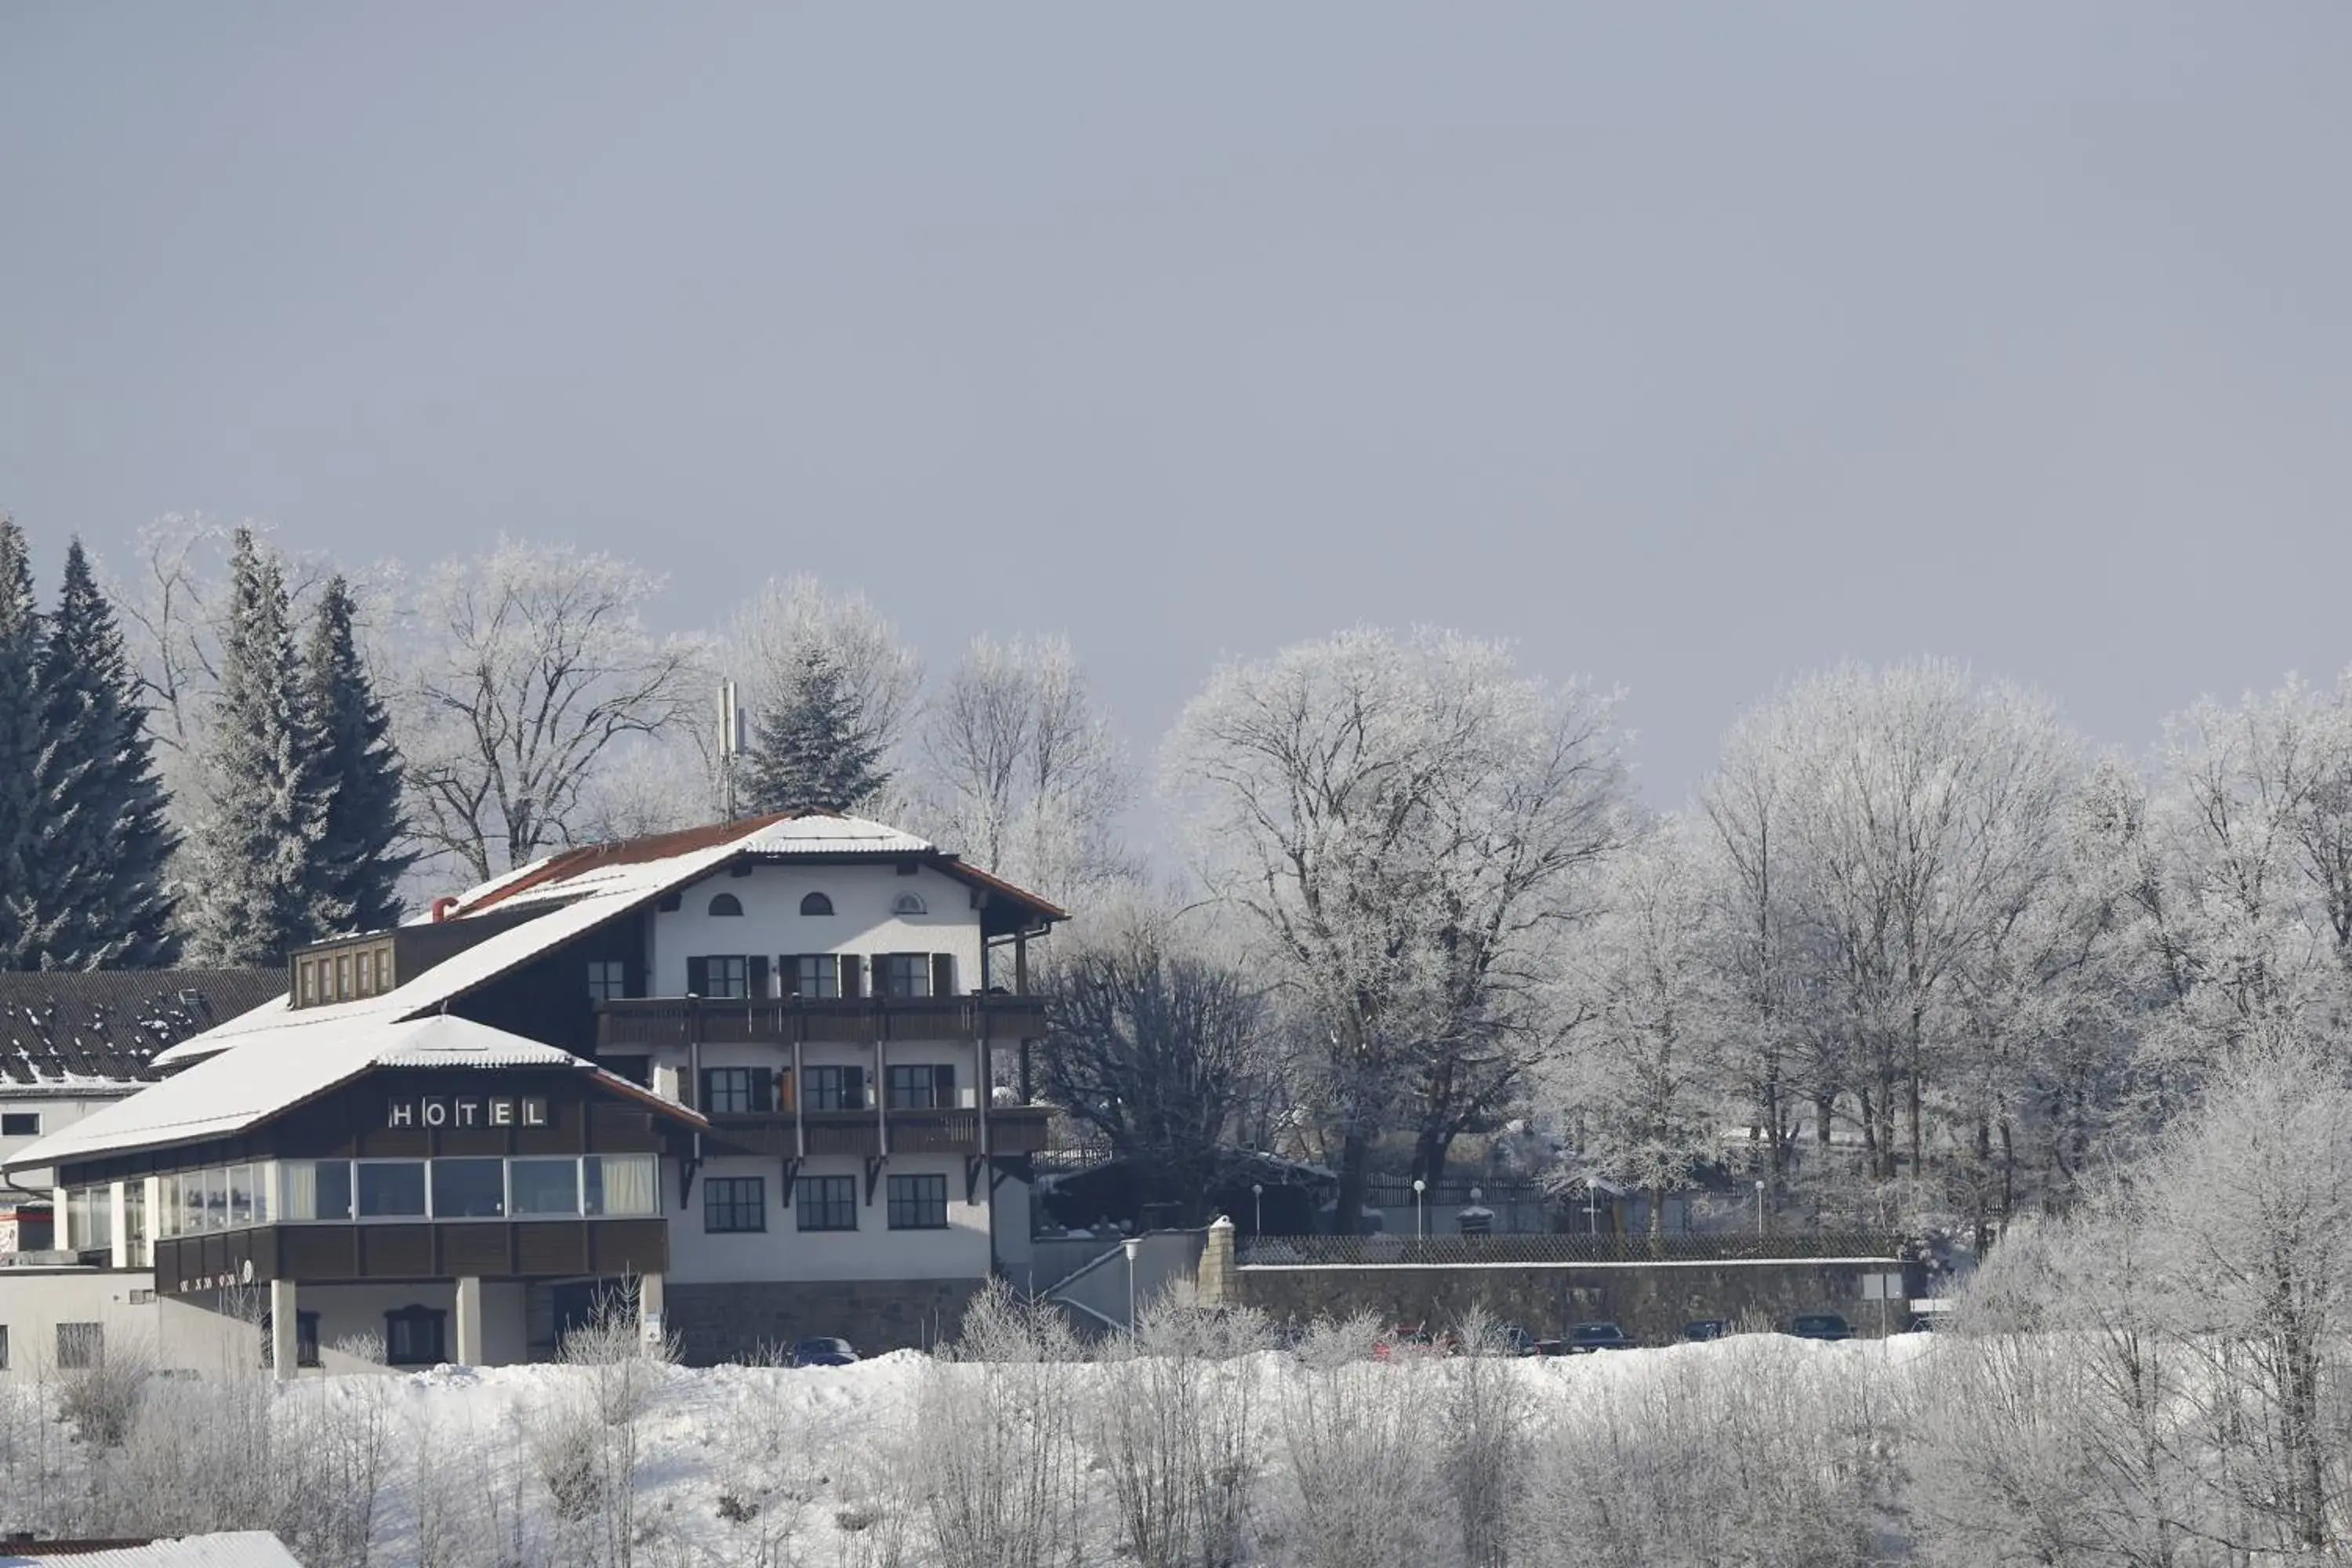 Property building, Winter in Landhotel Gottinger